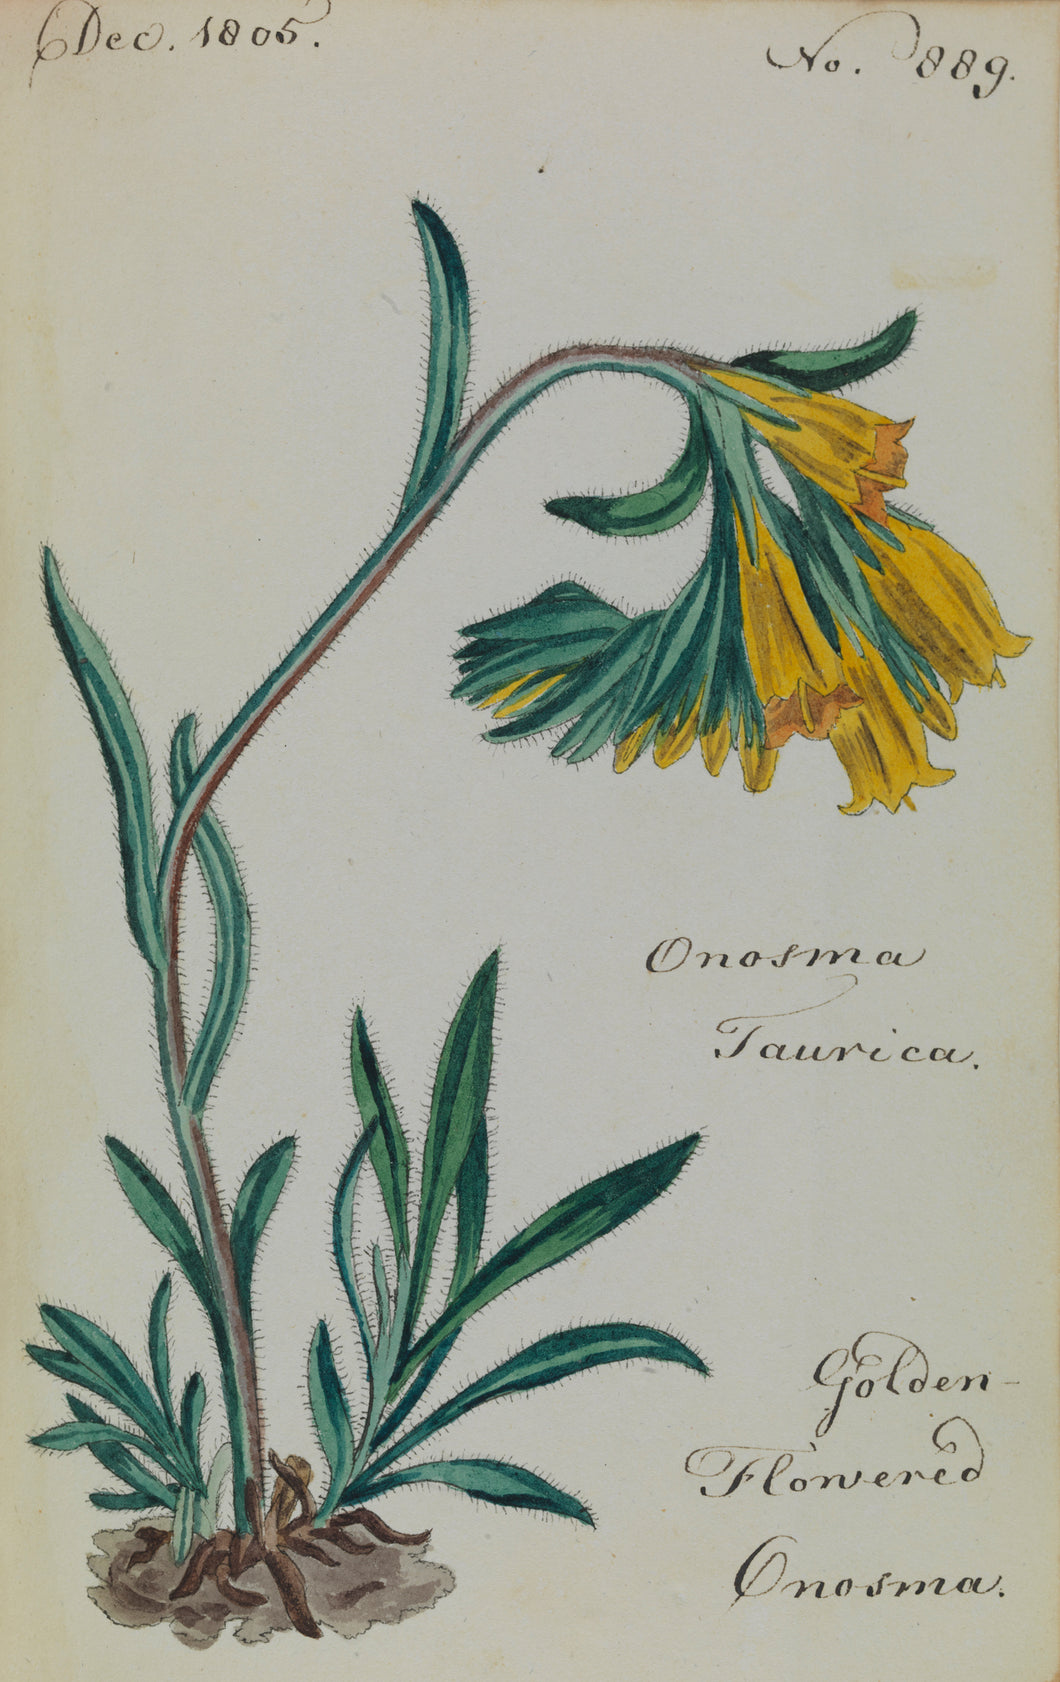 Golden-flowered Onosma